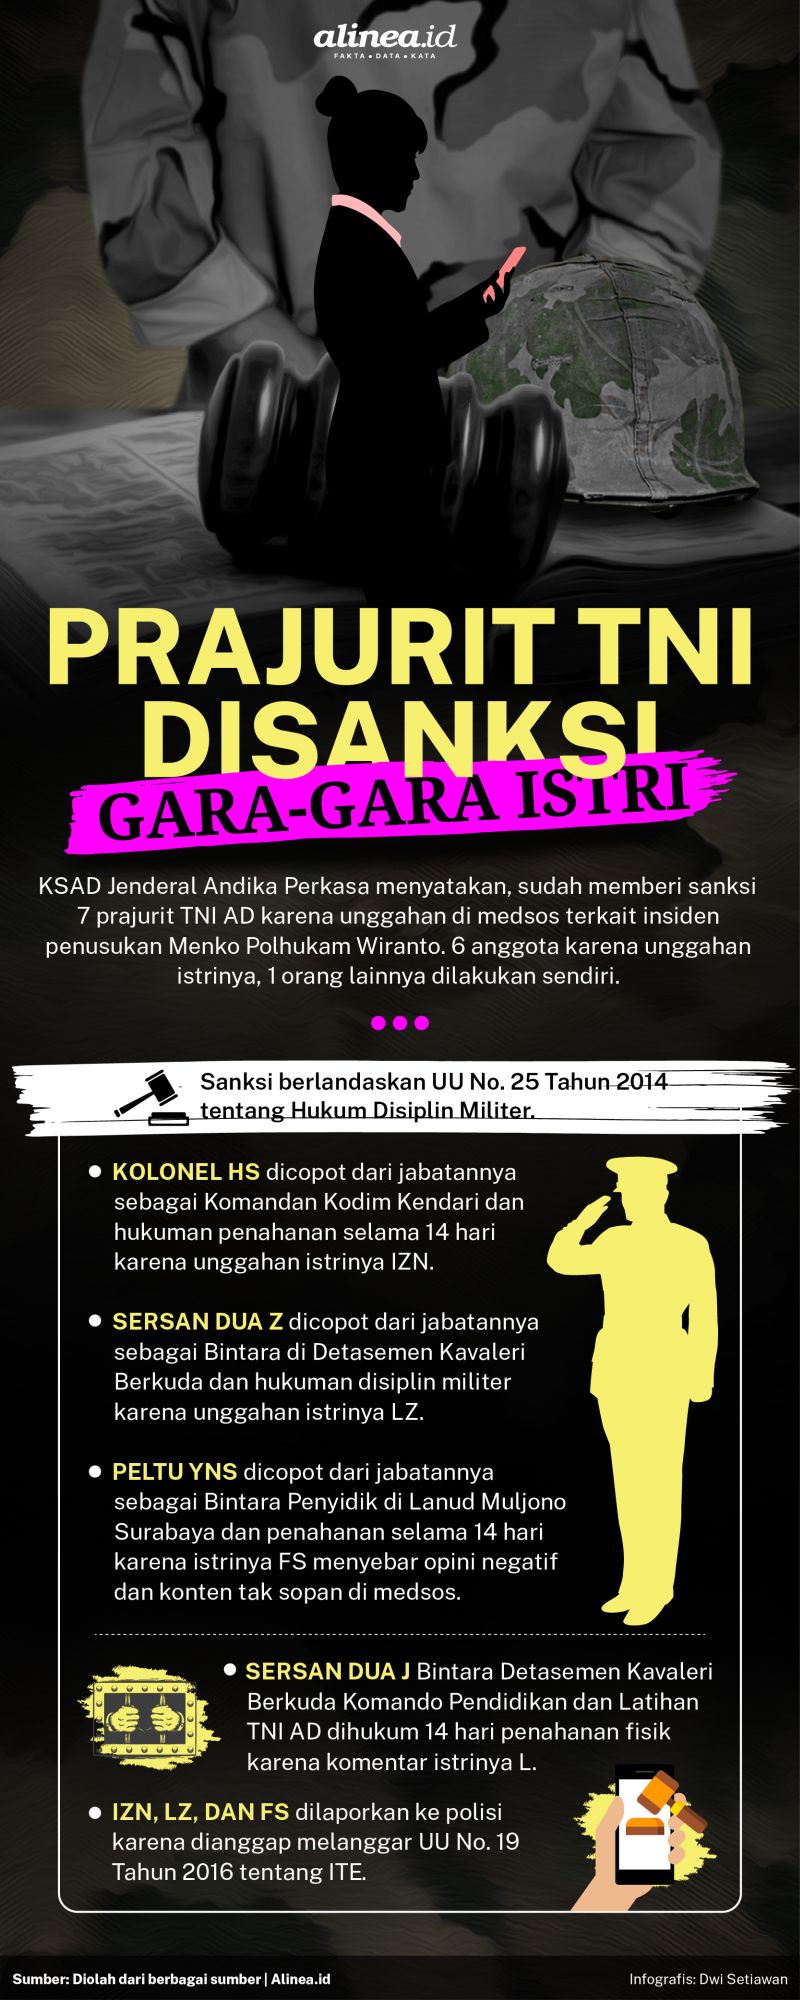 Beberapa anggota TNI dicopot dari jabatannya karena nyinyir istri di media sosial. Alinea.id/Dwi Setiawan.